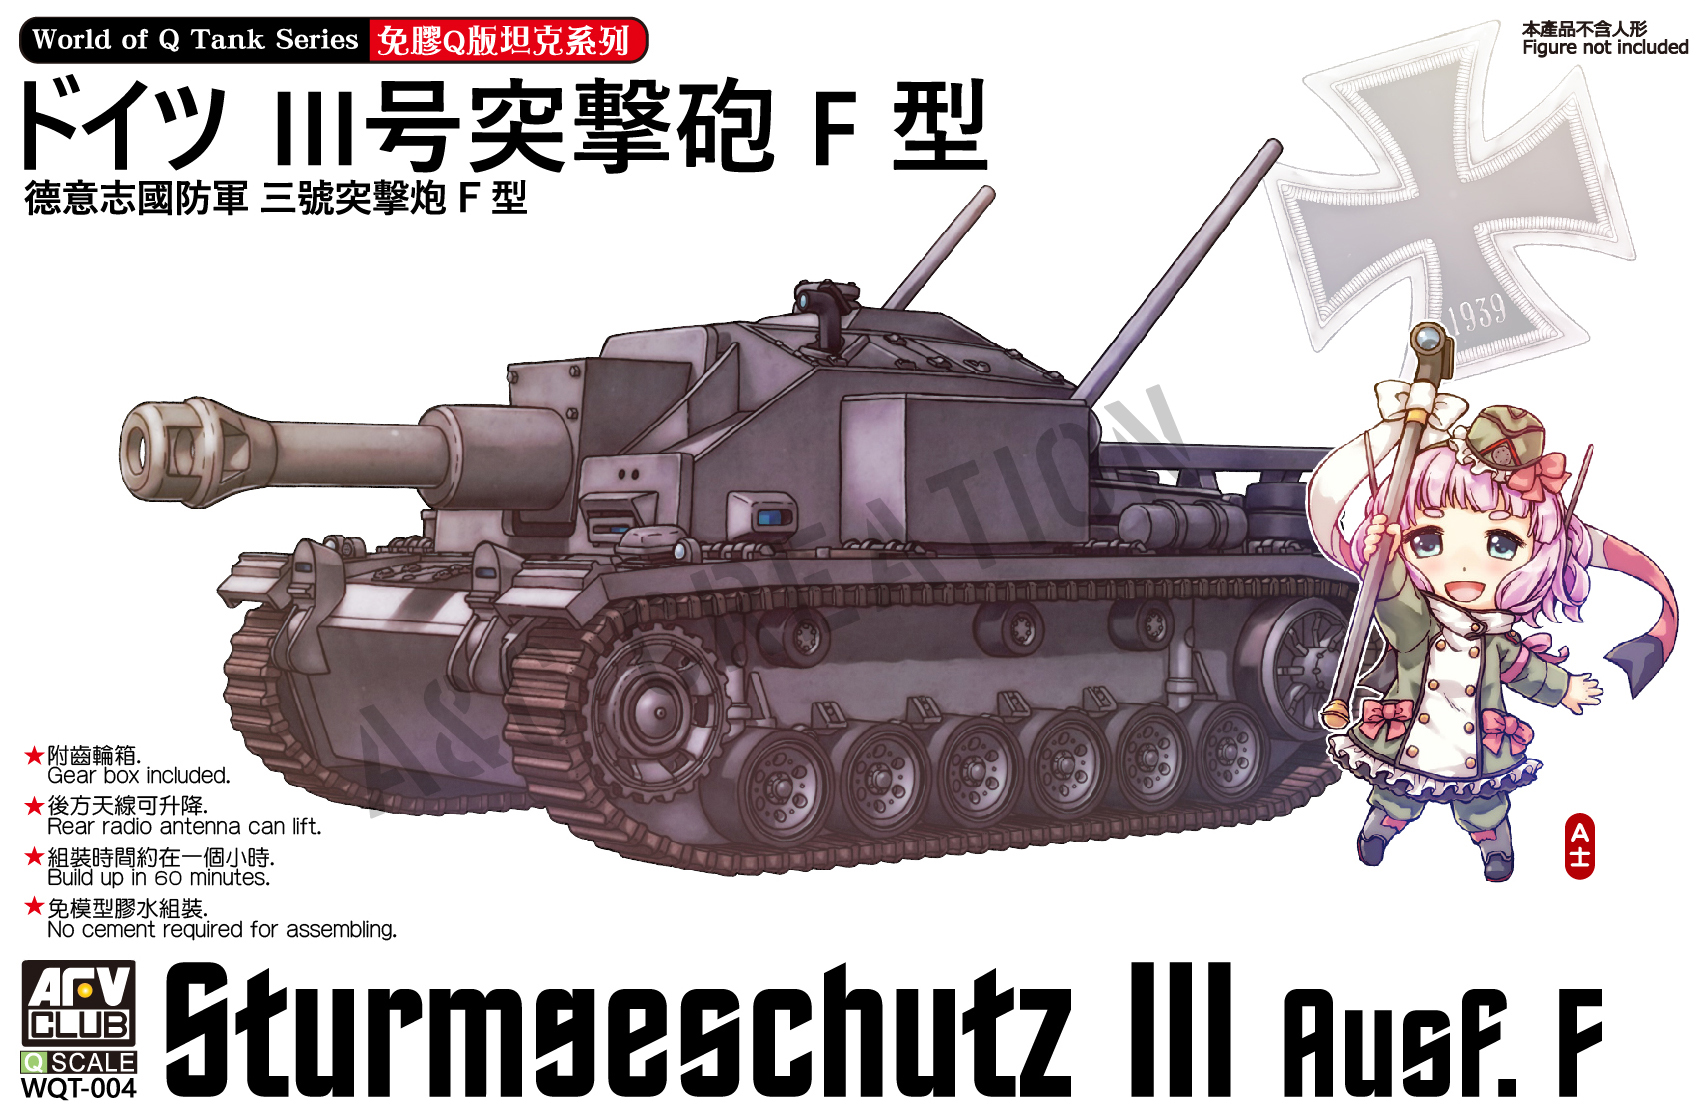 WQT-004 Sturmgeschutz III Ausf. F